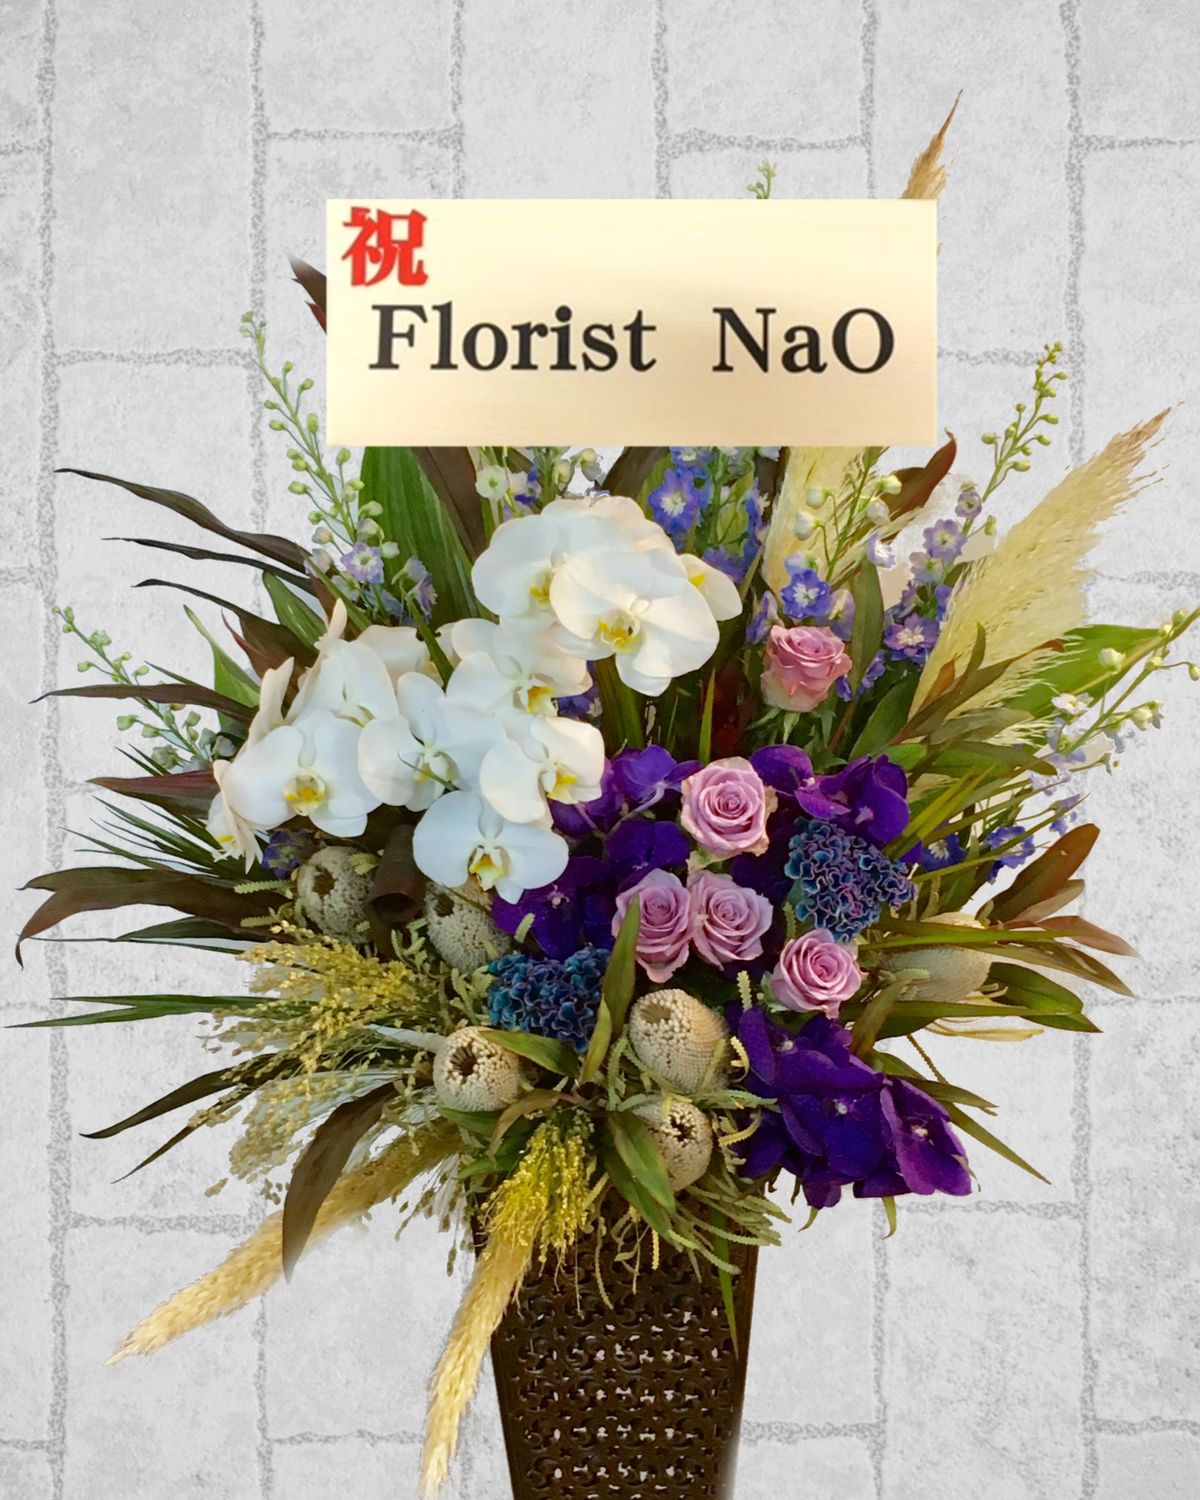 スタンド花 横浜の花屋florist Naoは無料配達 関内 みなとみらいなど配達実績多数